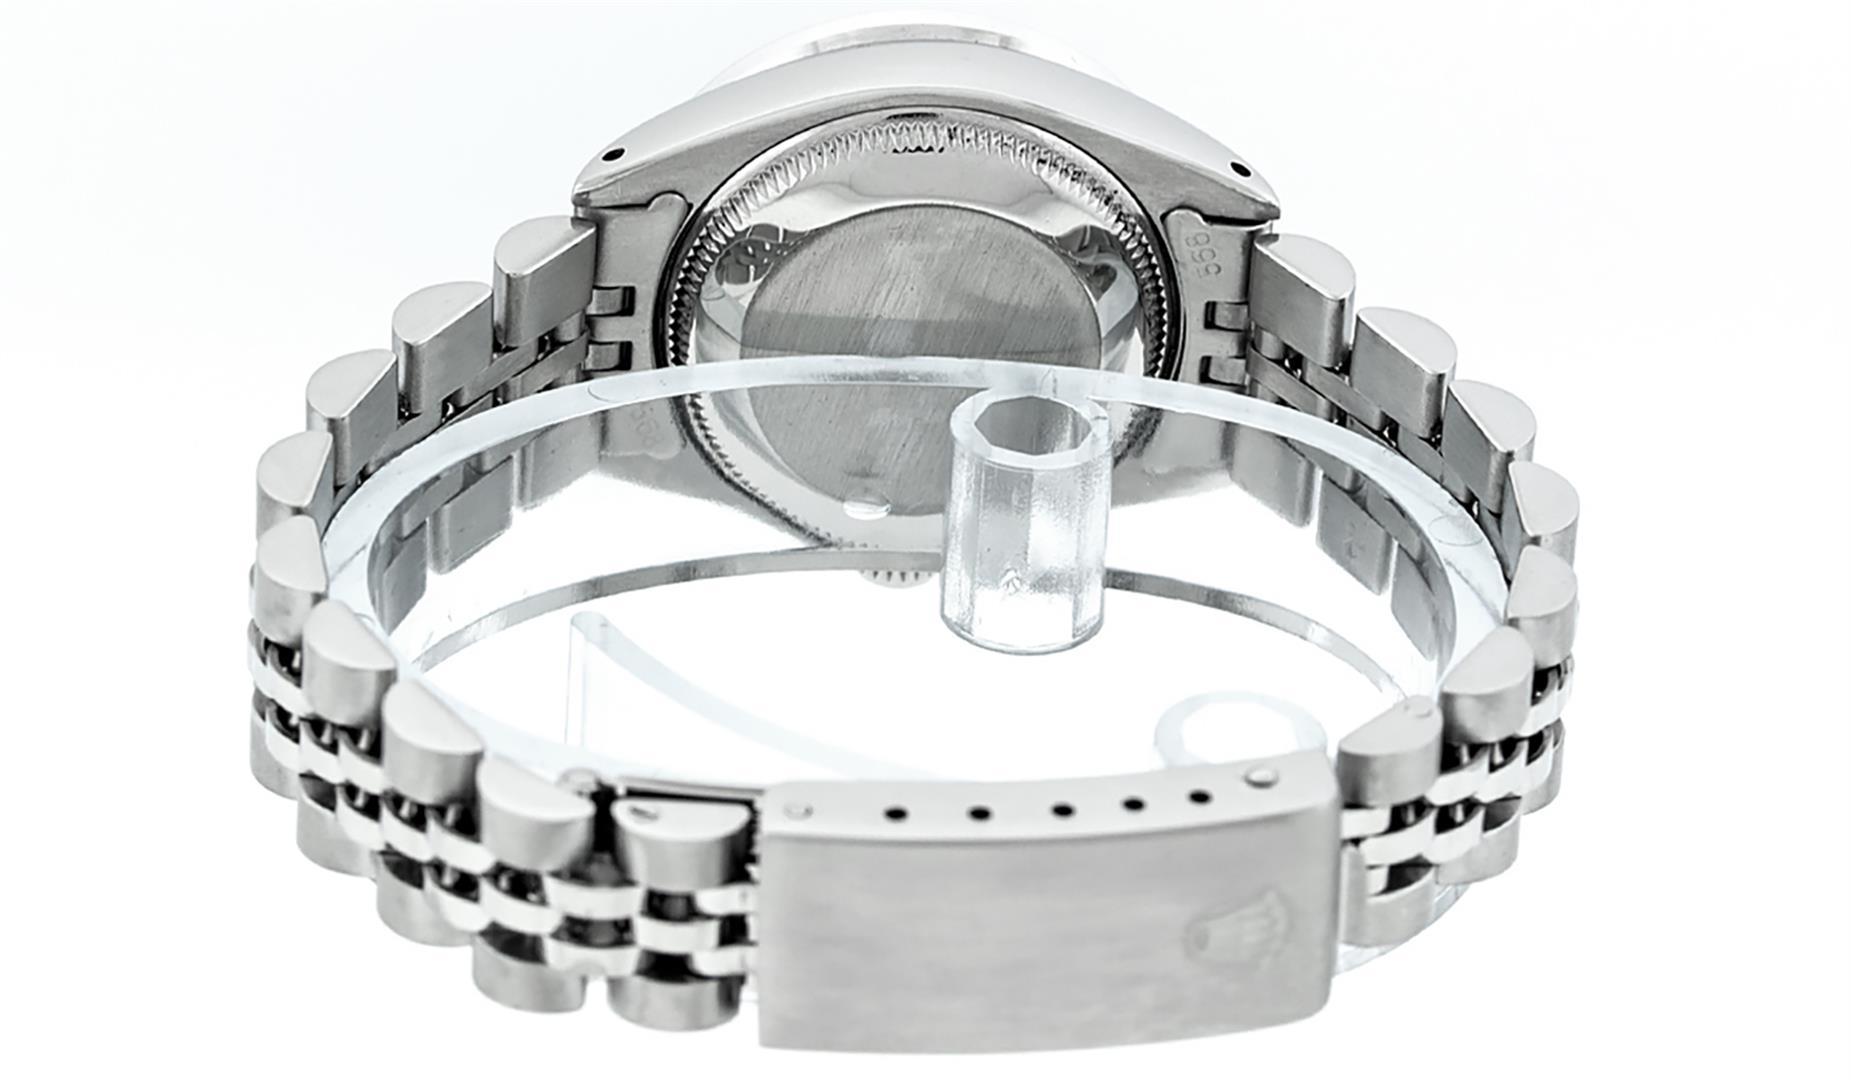 Rolex Ladies Stainless Steel Slate Grey Pyramid Diamond Datejust Wristwatch